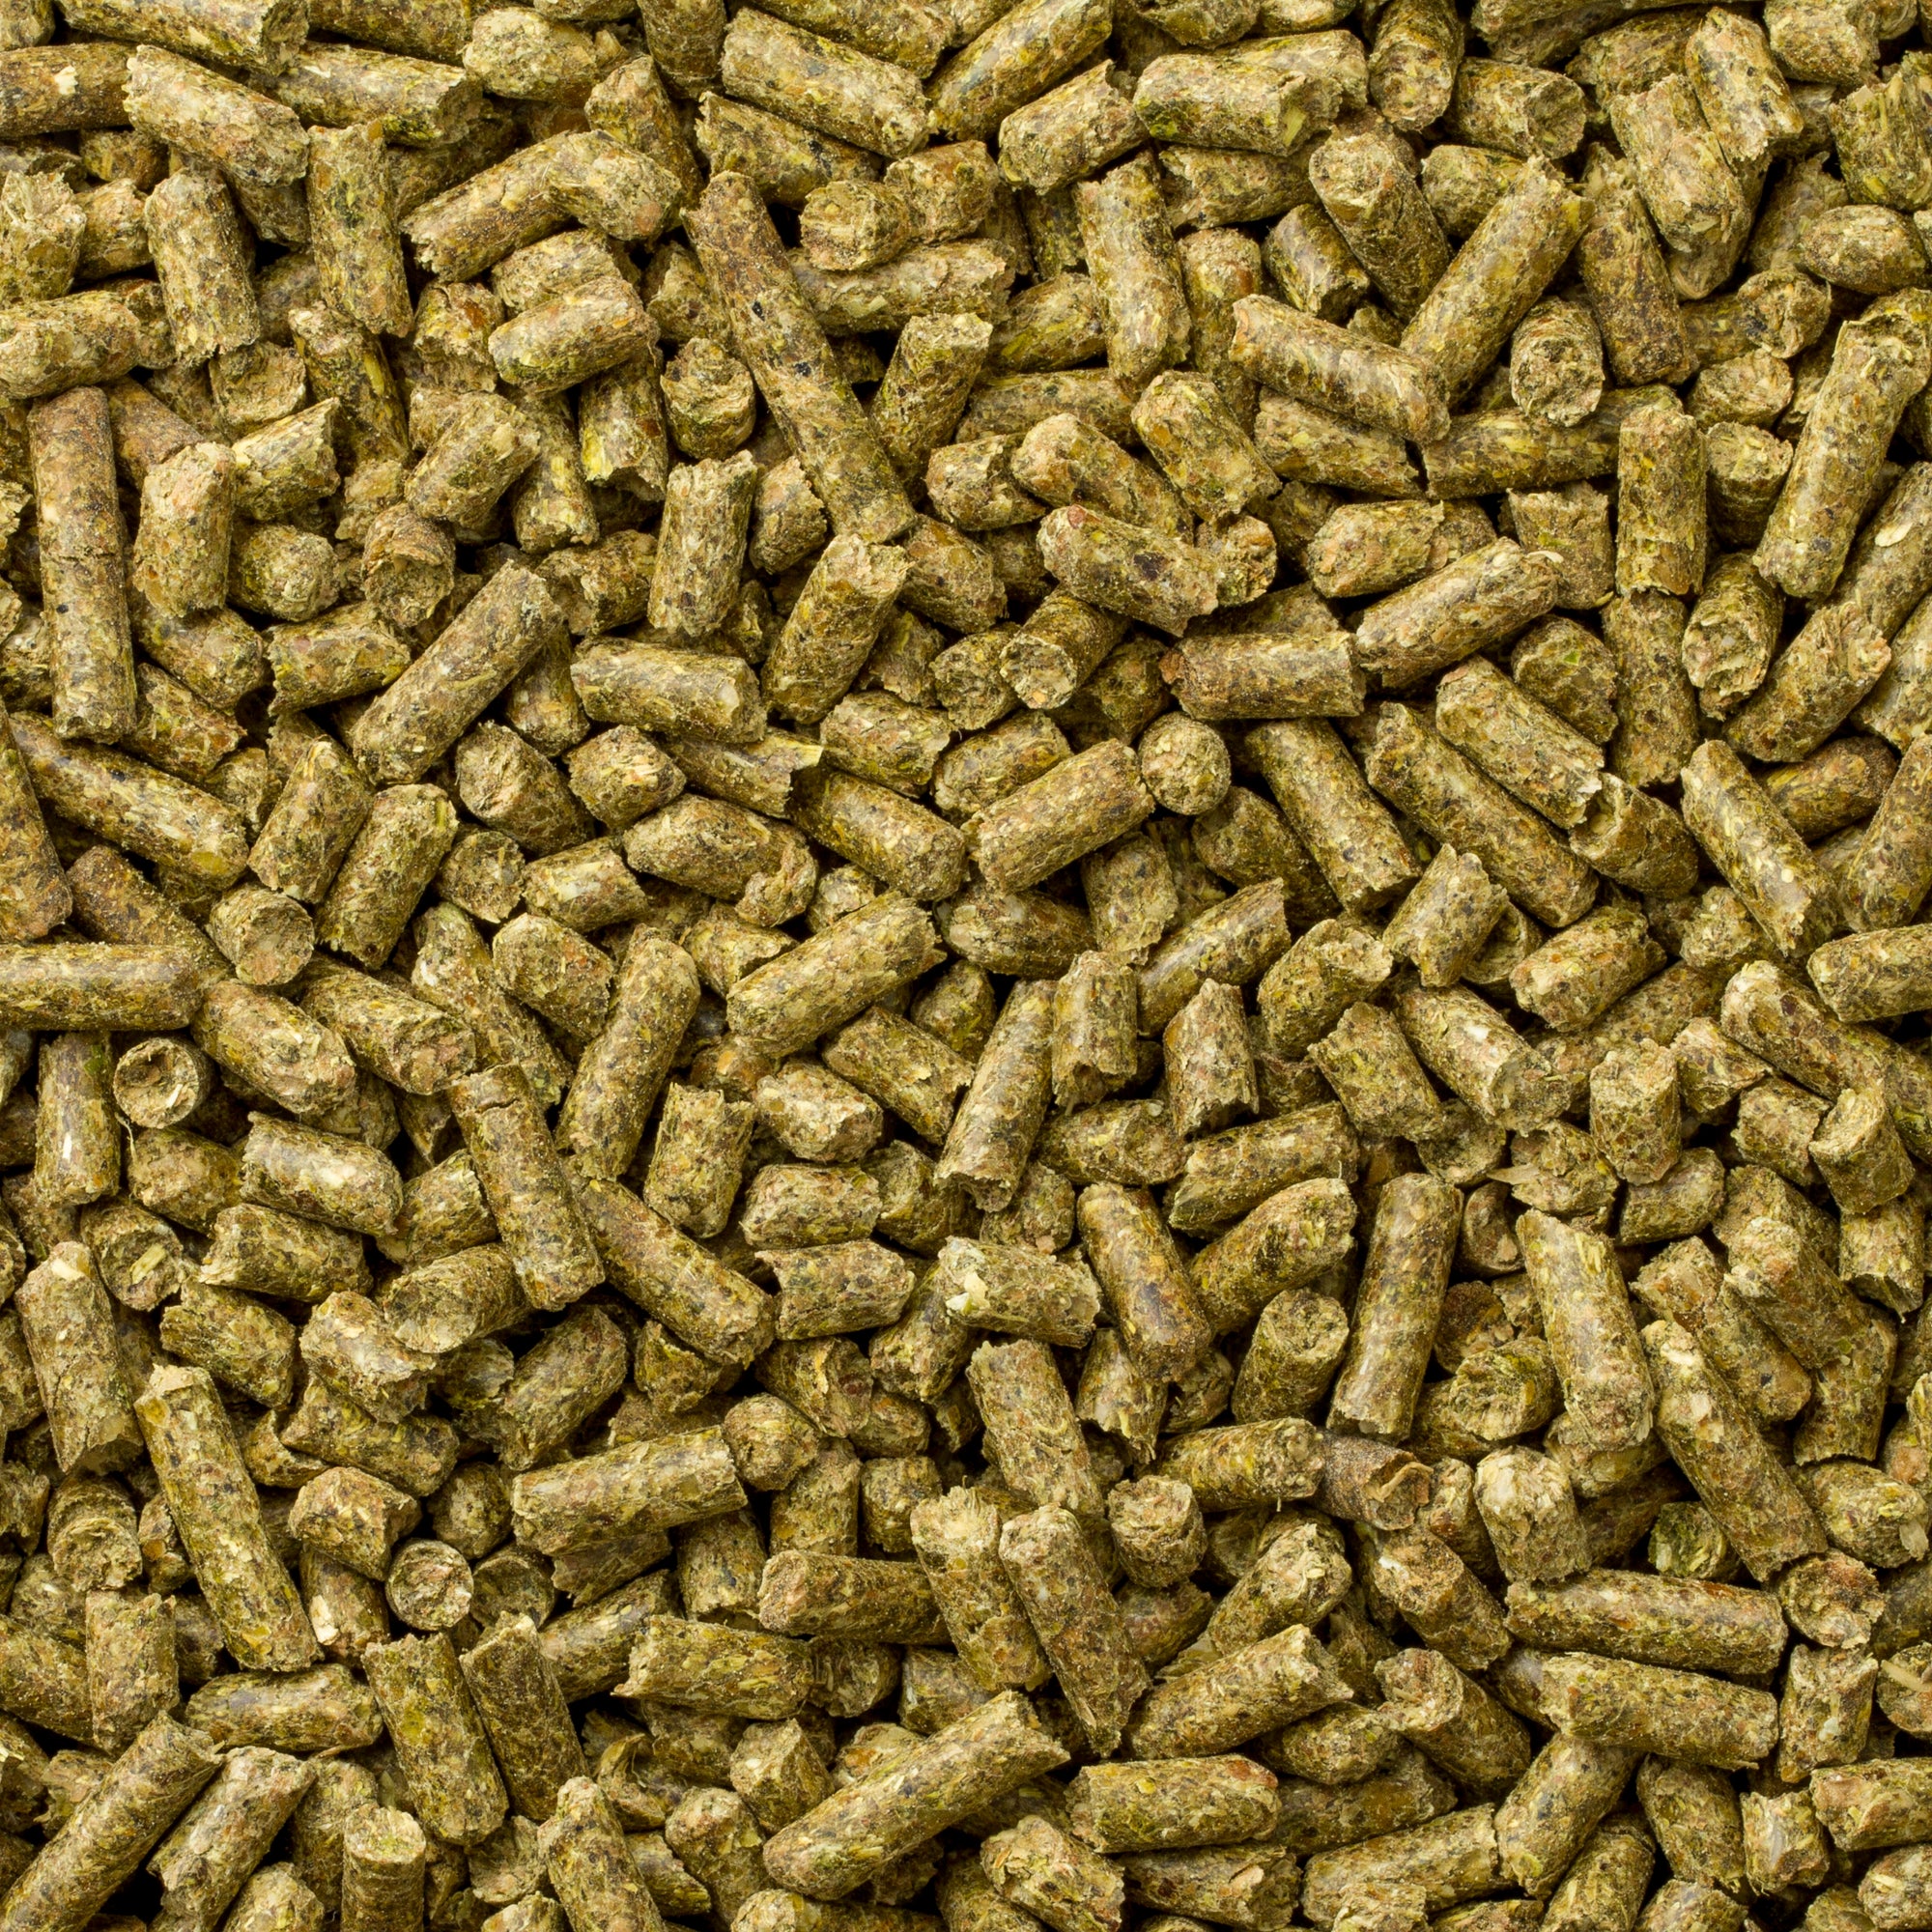 Chinchilla Diet brown pellets